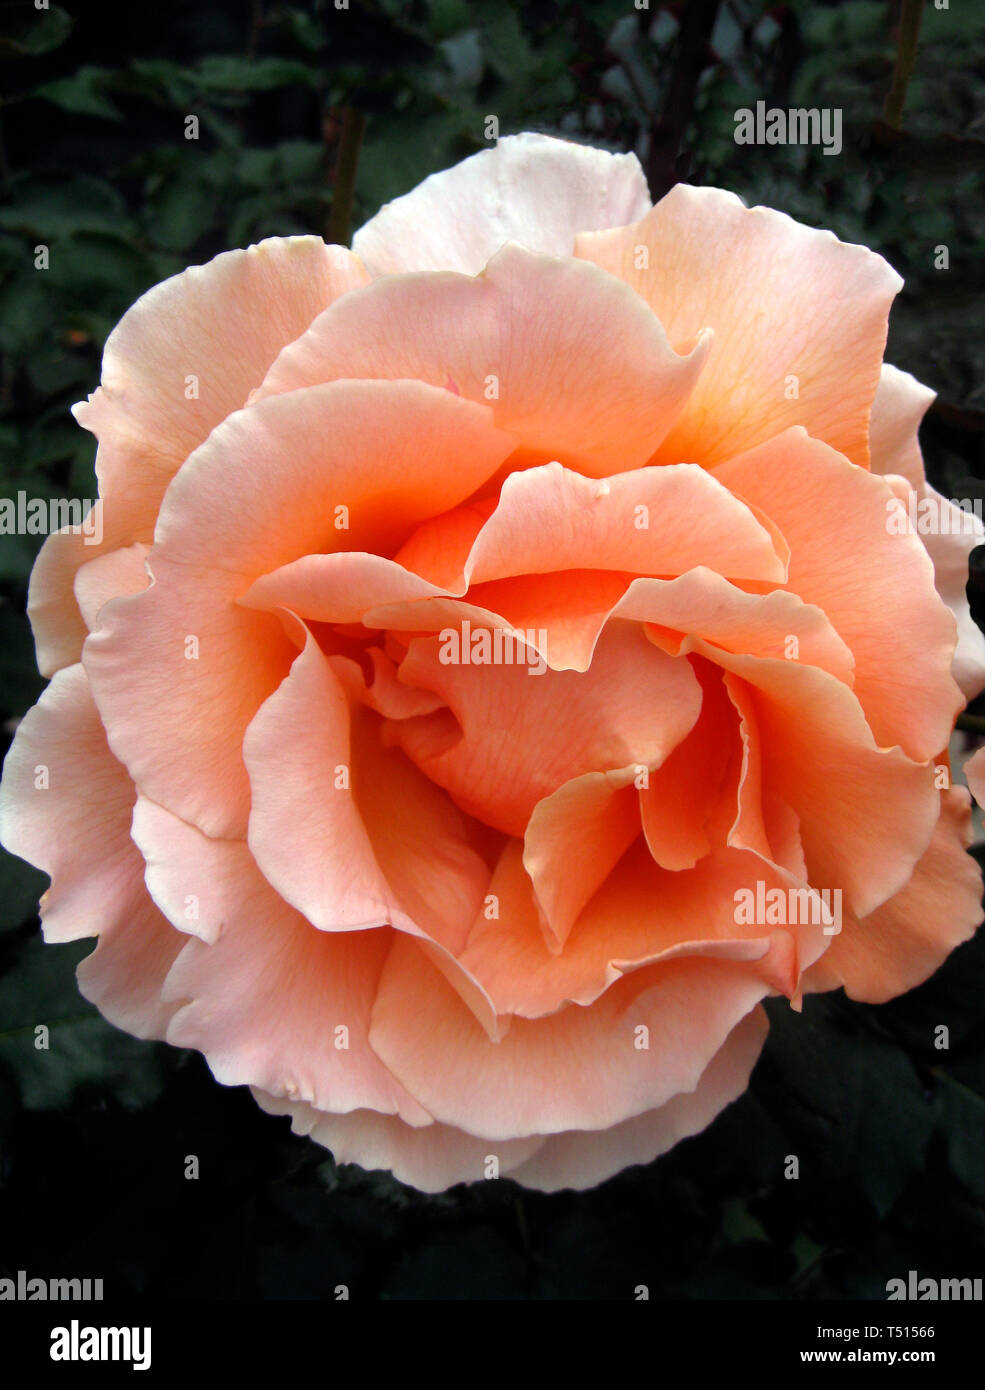 Este acercamiento muestra los pétalos de una flor rosa rosa hermosa plegar  hacia atrás desde el centro de este popular jardín de flores ornamentales.  La rosa es un tipo de arbusto de